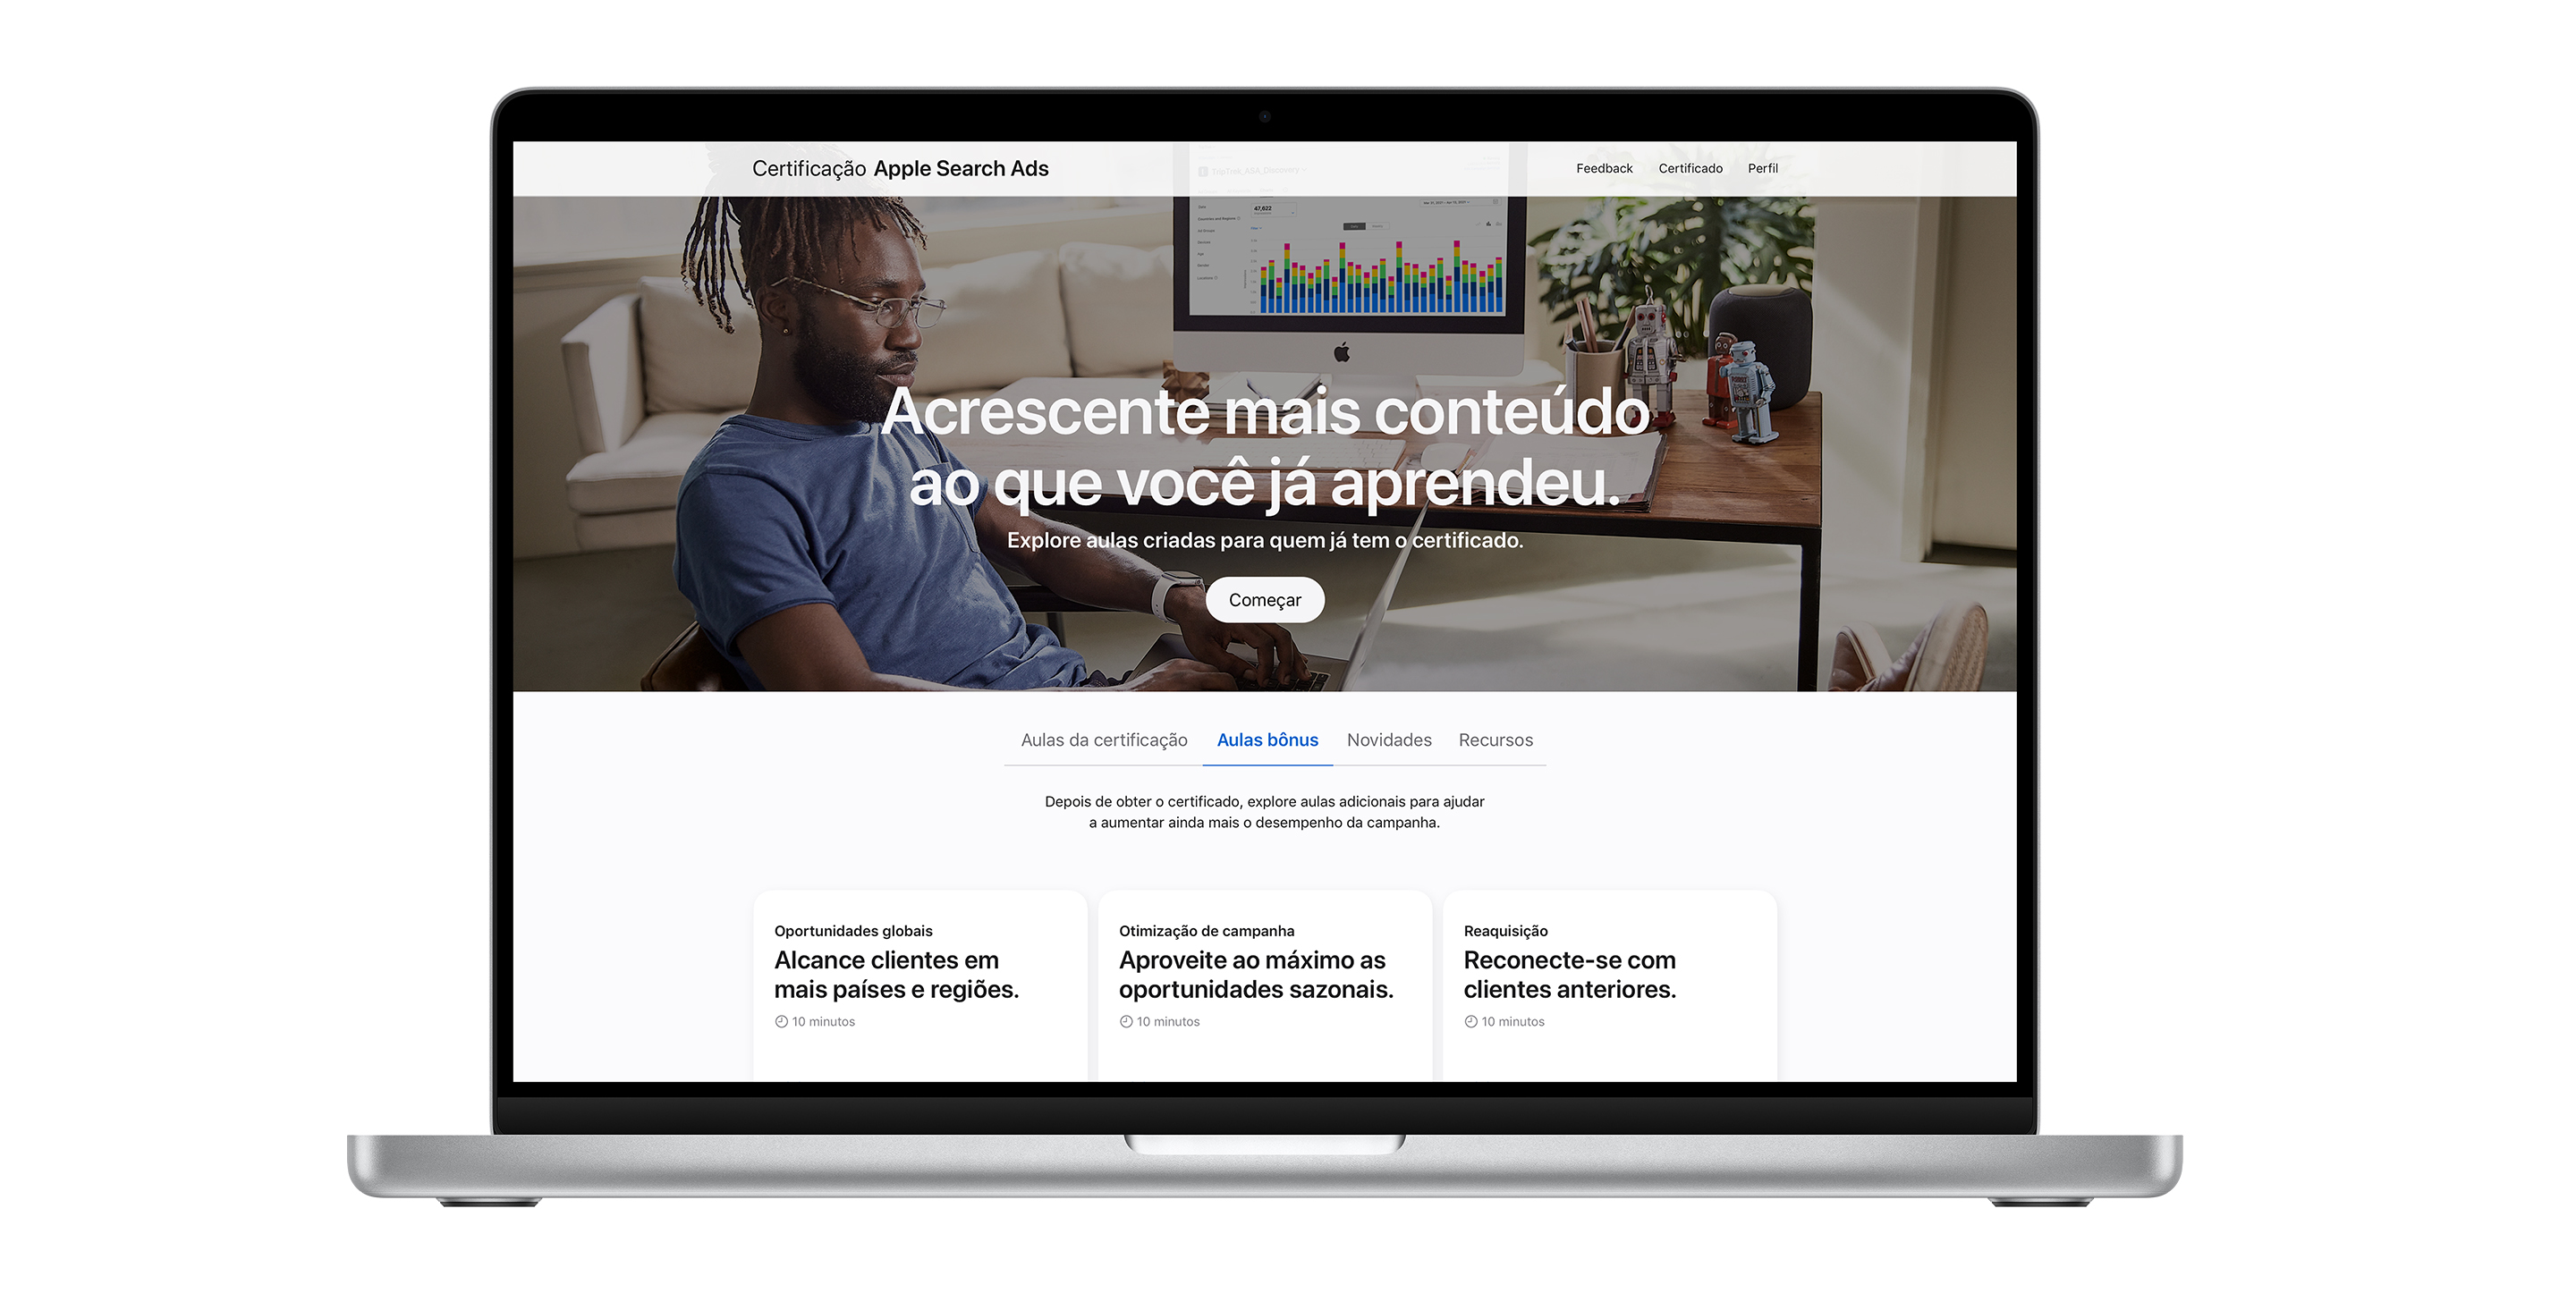 Página de Certificação Apple Search Ads exibindo a aba de lições bônus. Ele mostra três lições para ajudar a aumentar o desempenho da campanha.